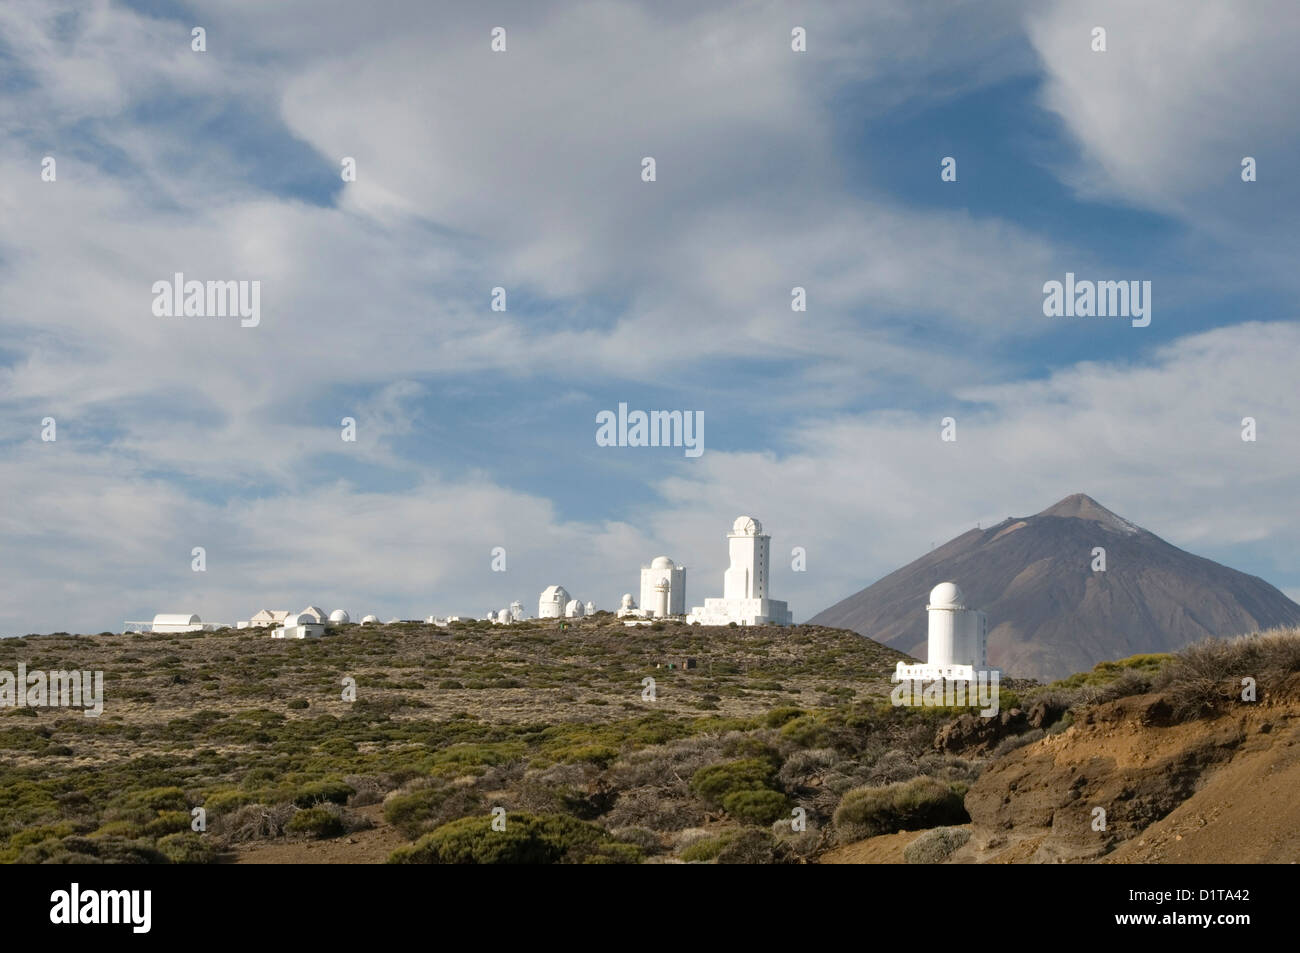 Observatorio del Teide Observatory tenerife canary islands island canaries Instituto de Astrofísica de Canarias telescope telesc Stock Photo